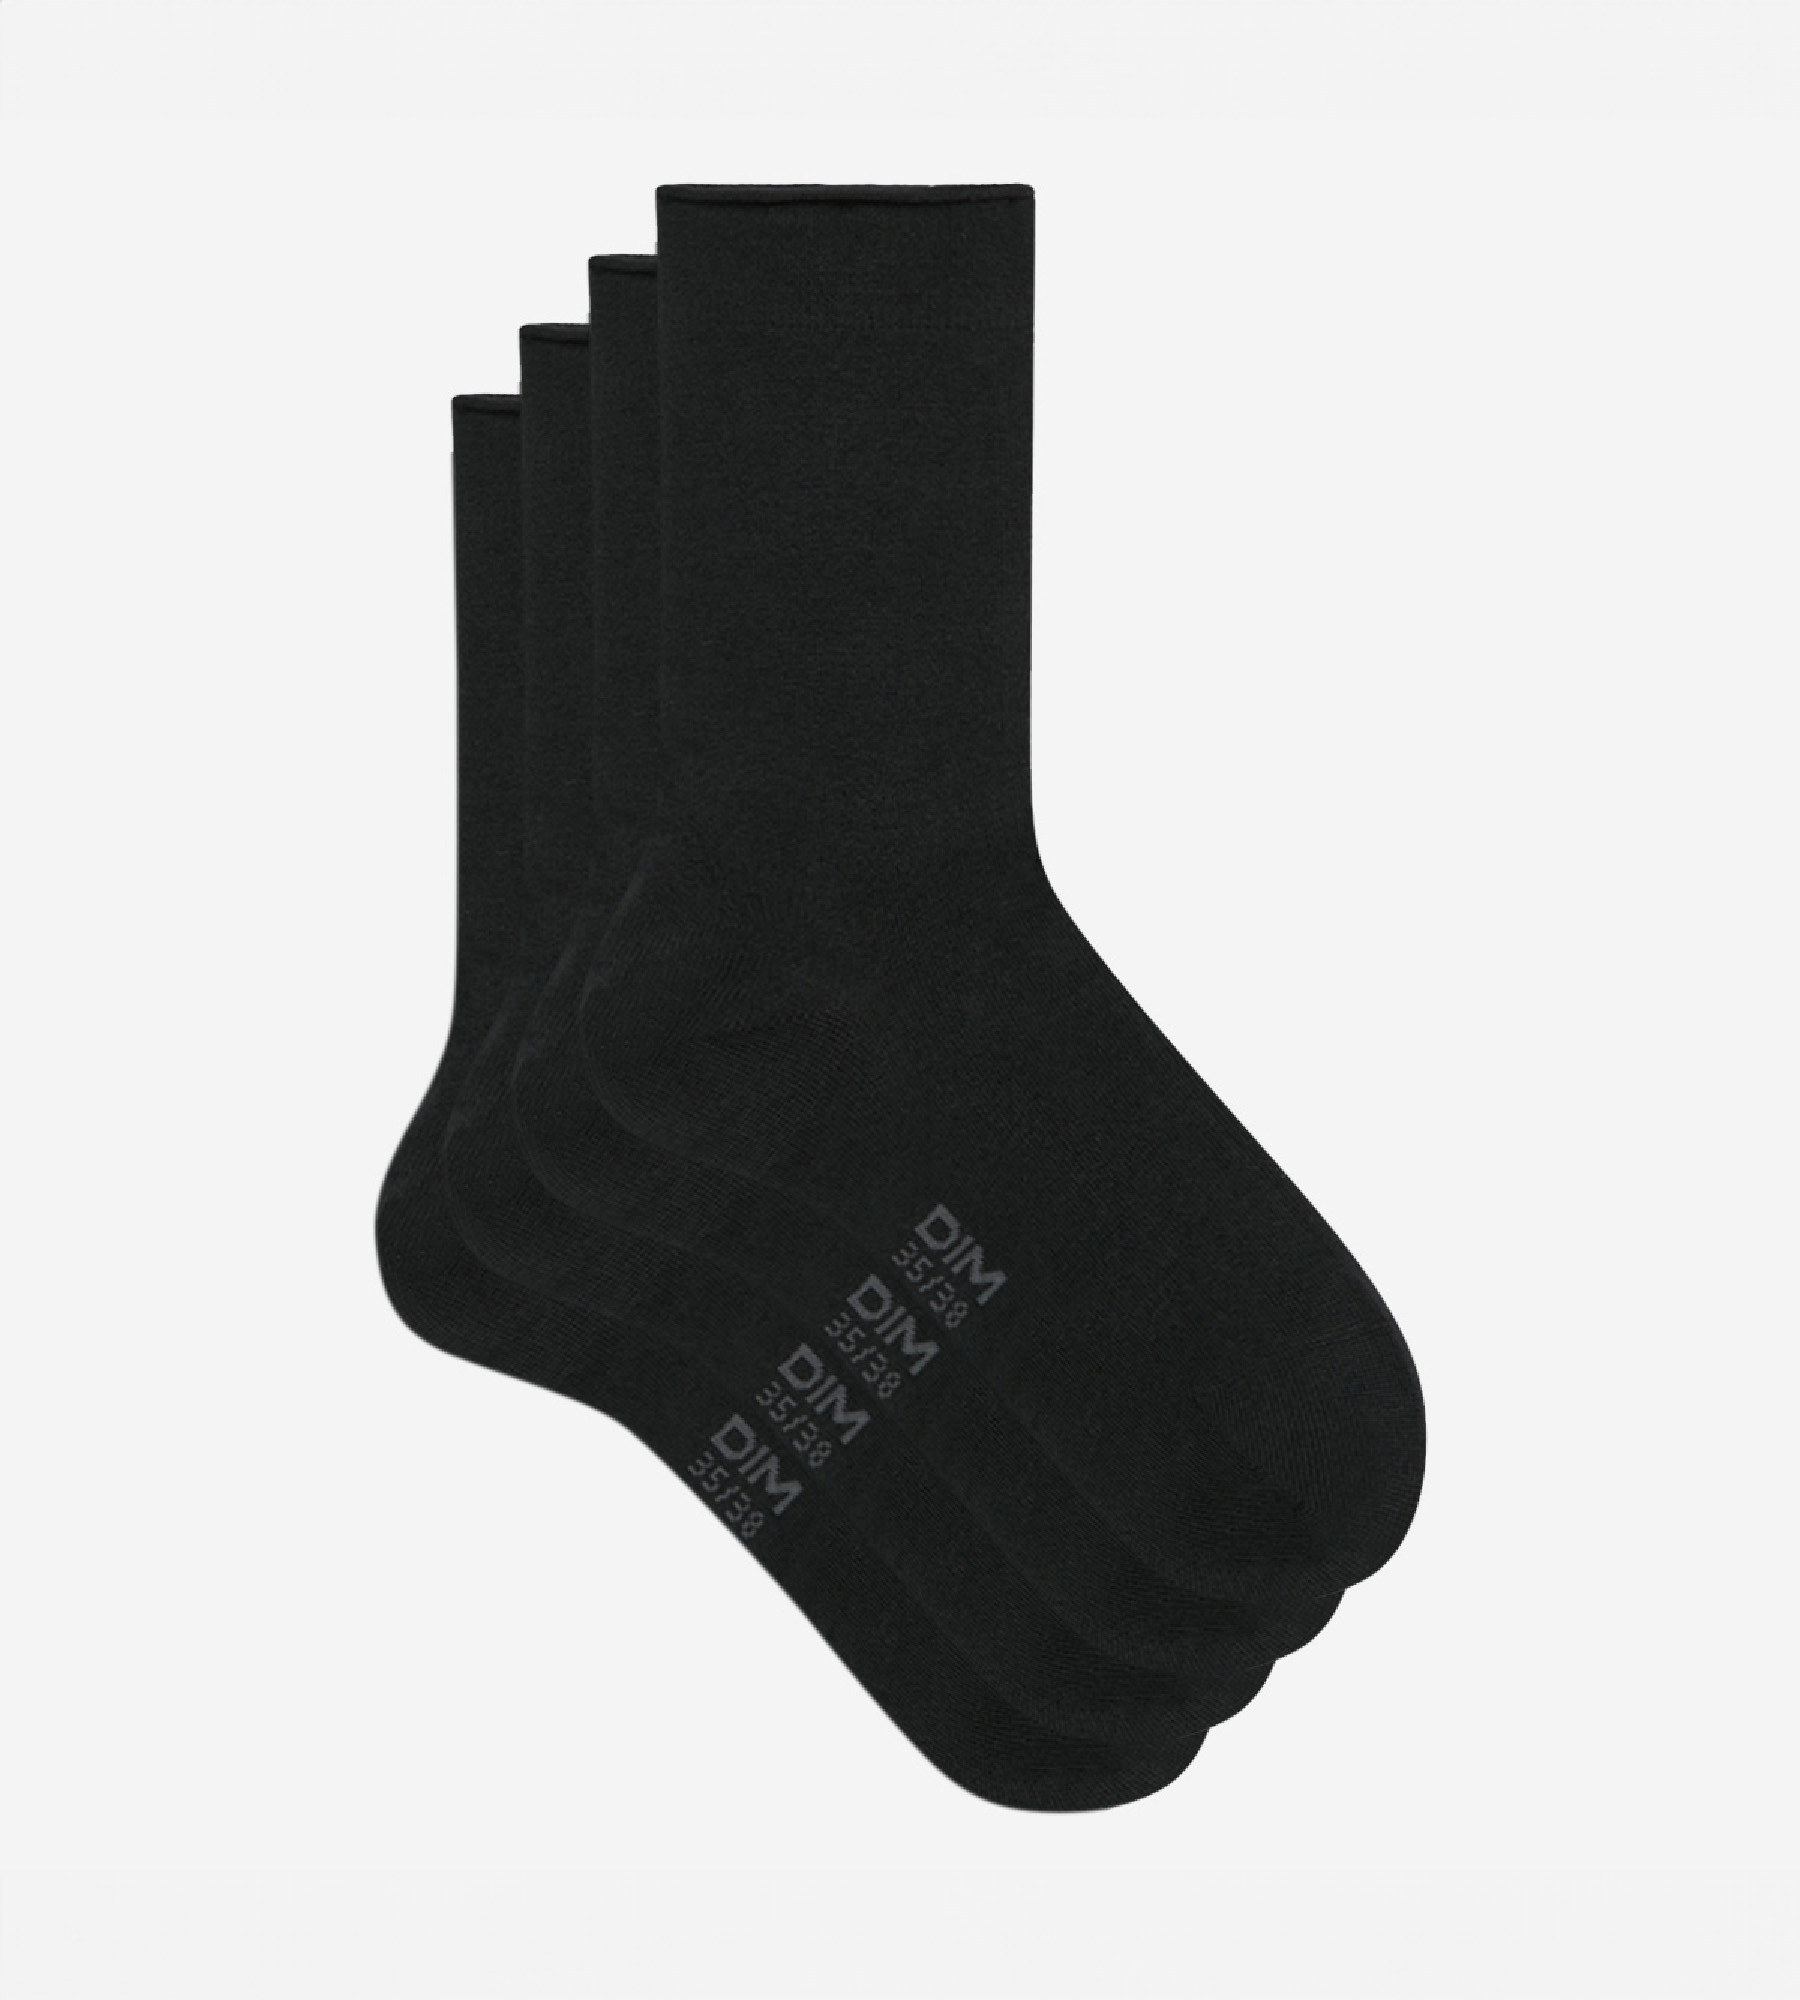 Chaussettes noires - 2 paires (9703333)